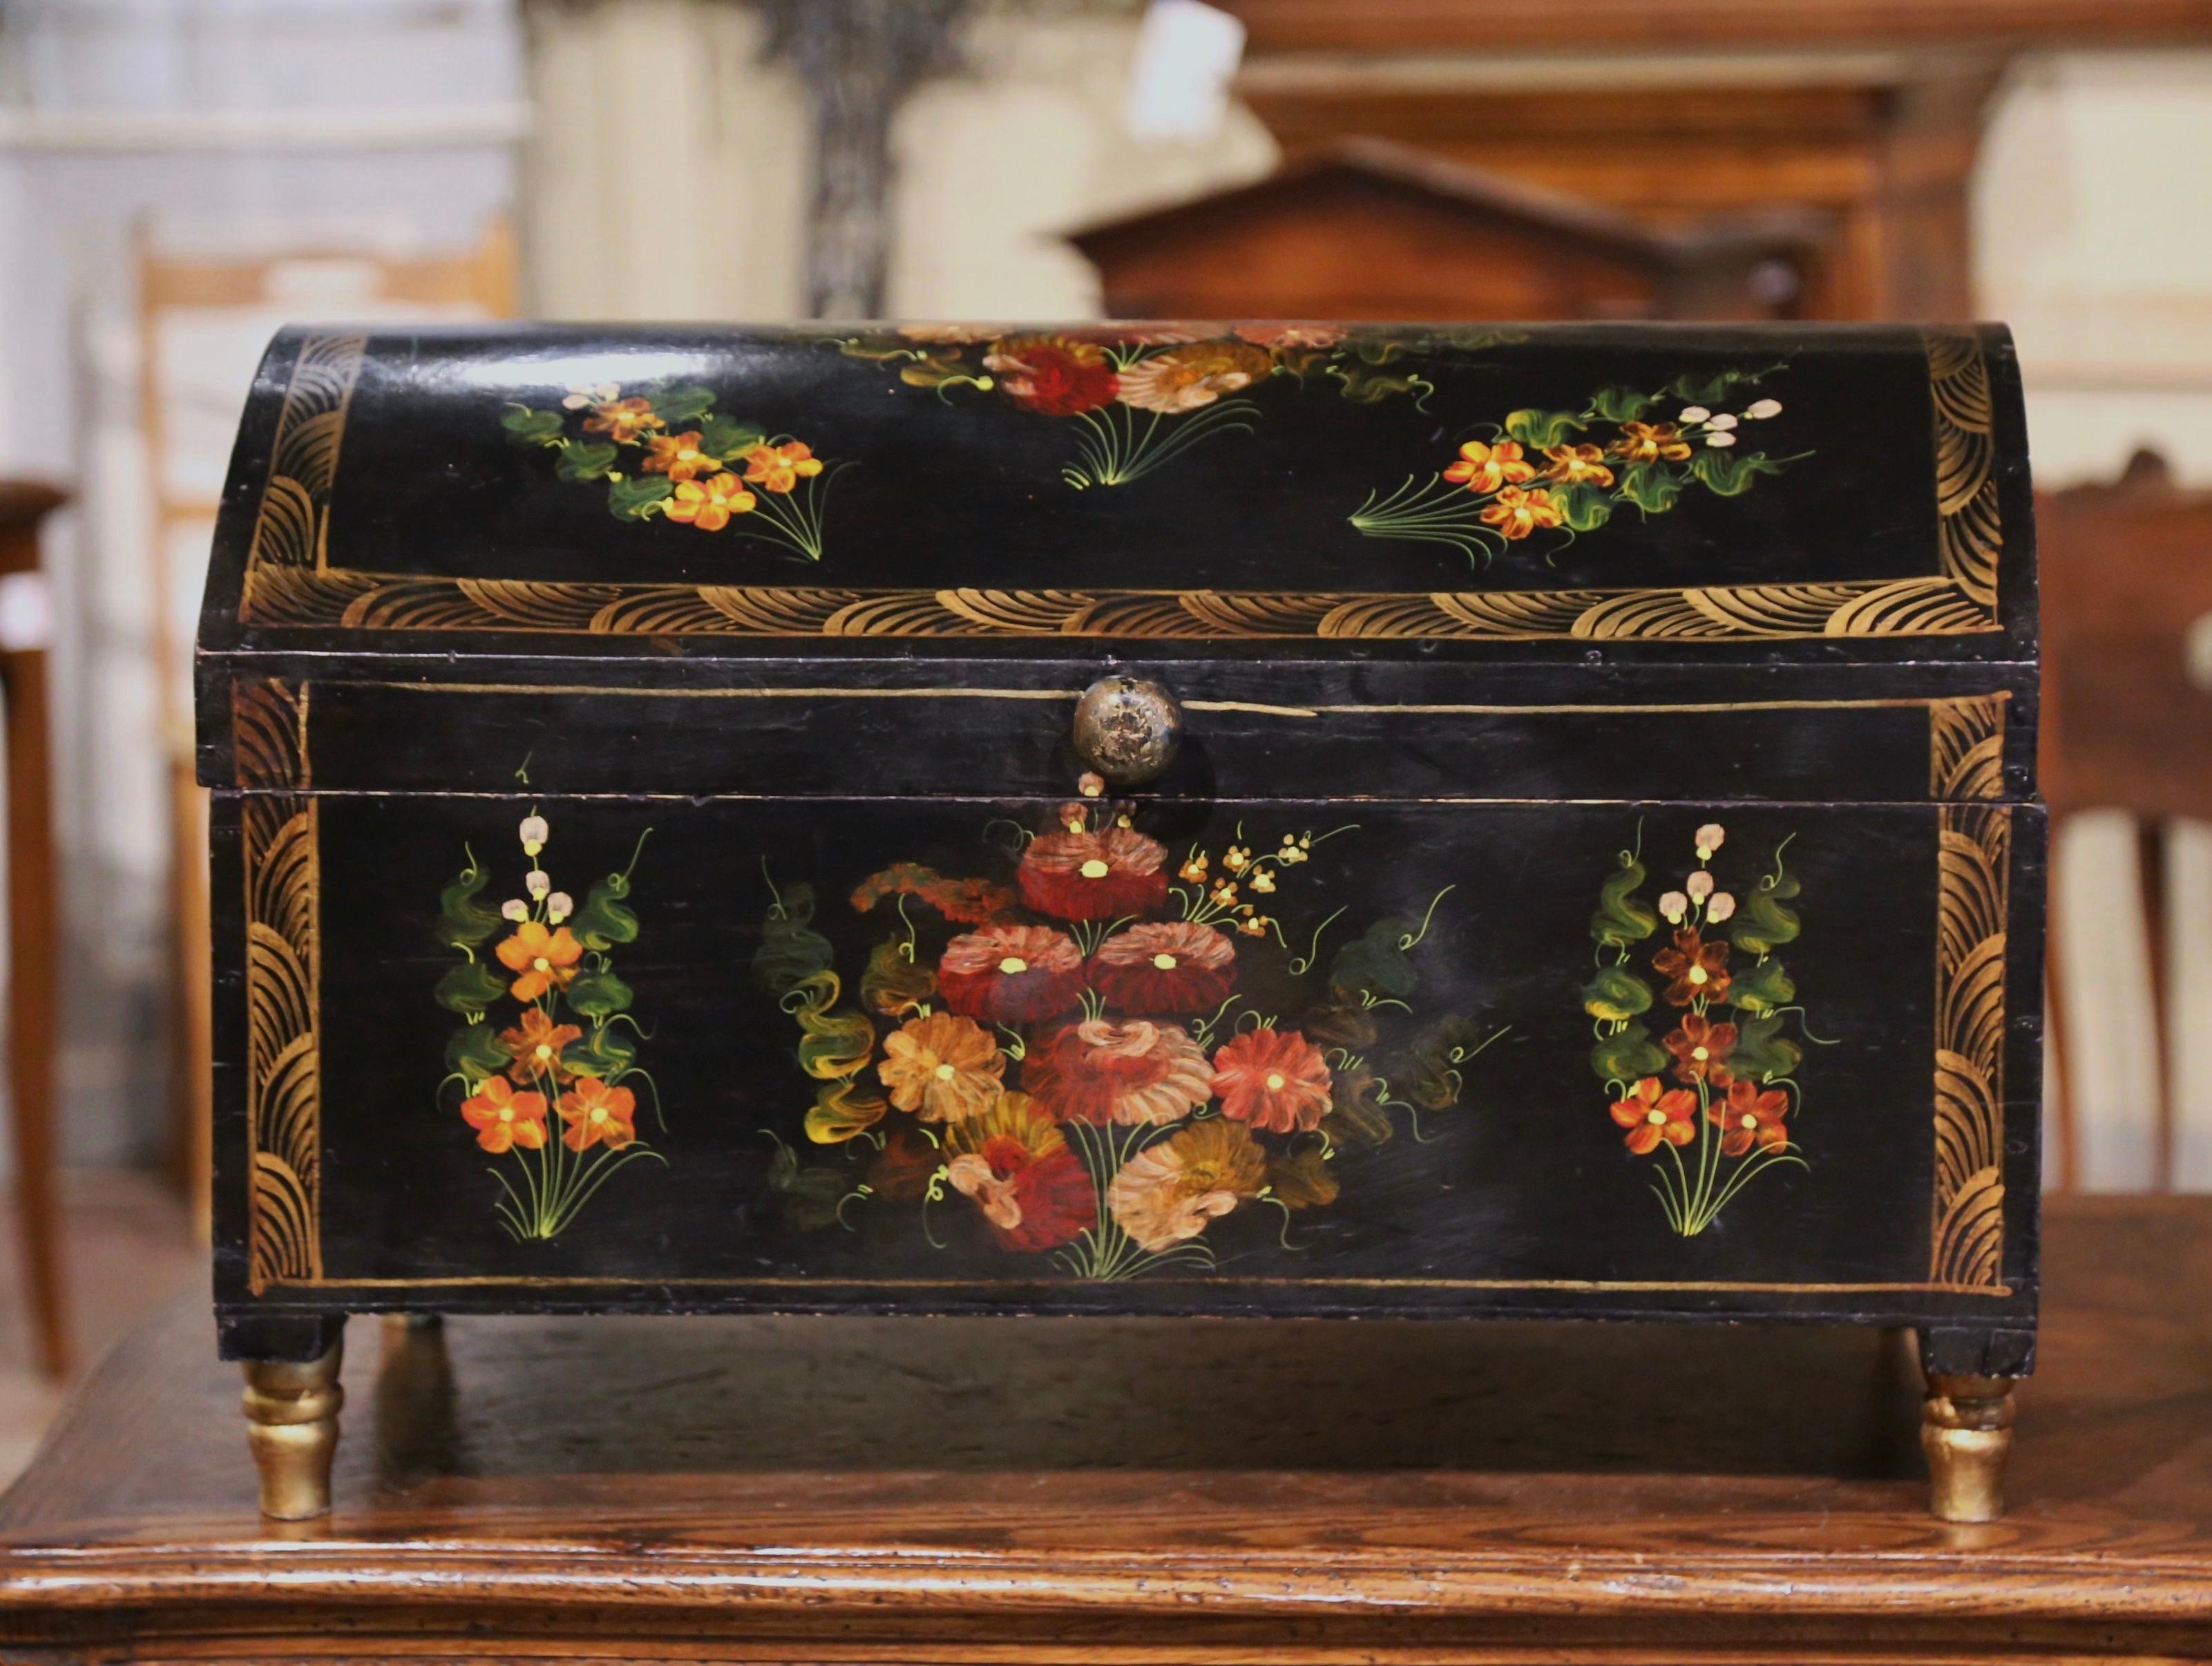 Cette magnifique malle de mariage ancienne a été fabriquée en Espagne, vers 1920. La boîte colorée au sommet arqué repose sur de petits pieds tournés peints en doré et est habillée d'un bouton en bois. Le meuble est décoré de motifs floraux et de